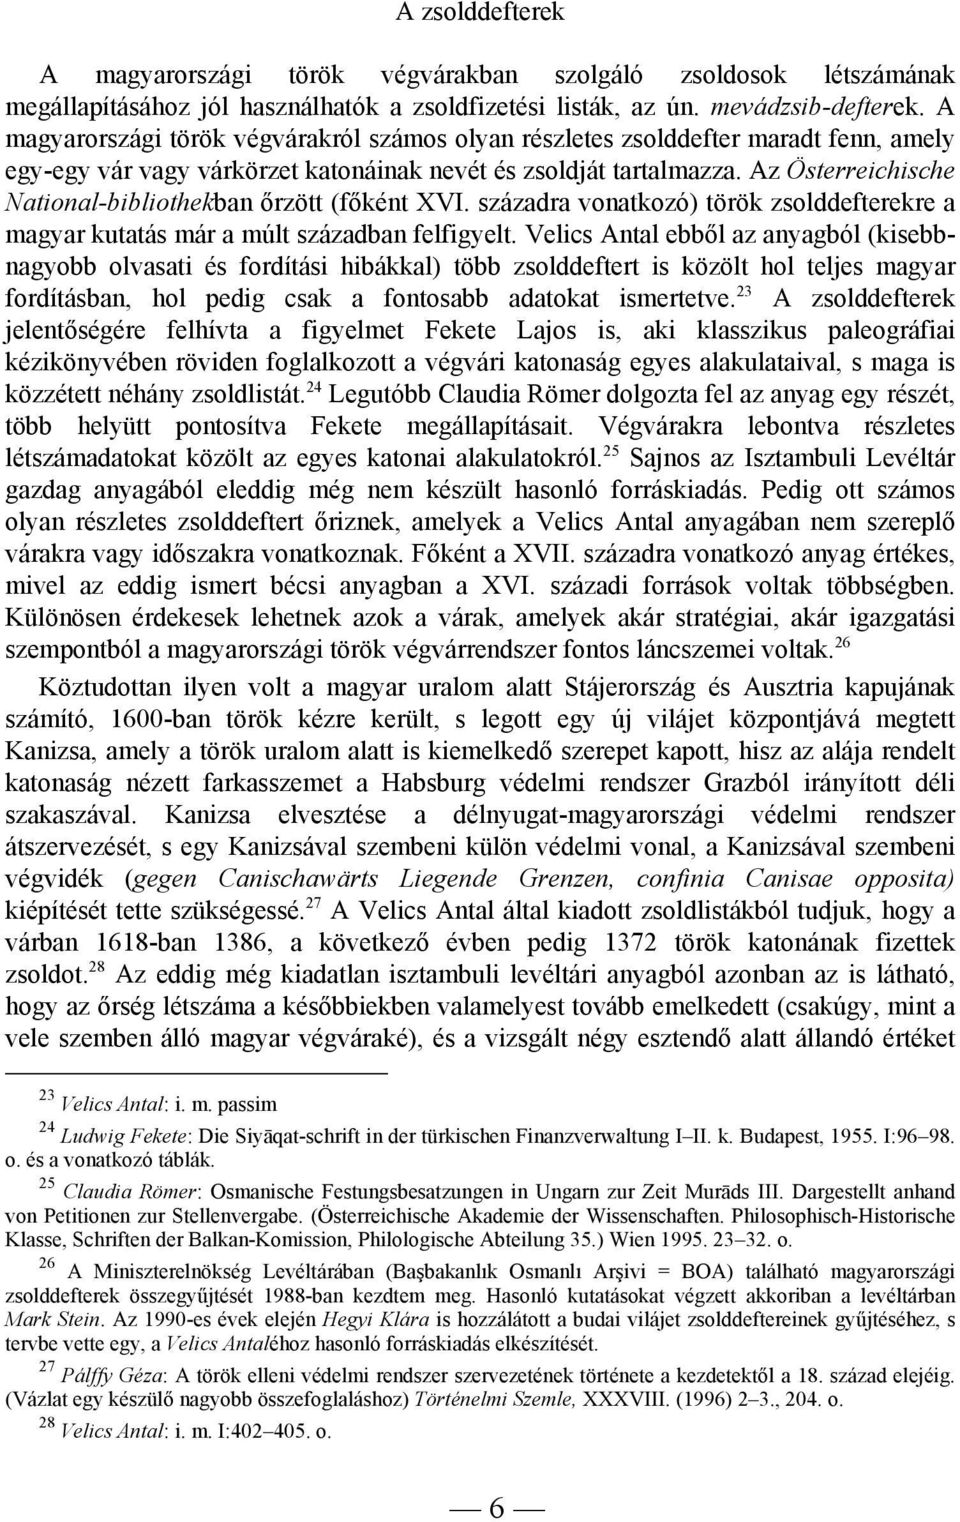 Az Österreichische National-bibliothekban őrzött (főként XVI. századra vonatkozó) török zsolddefterekre a magyar kutatás már a múlt században felfigyelt.